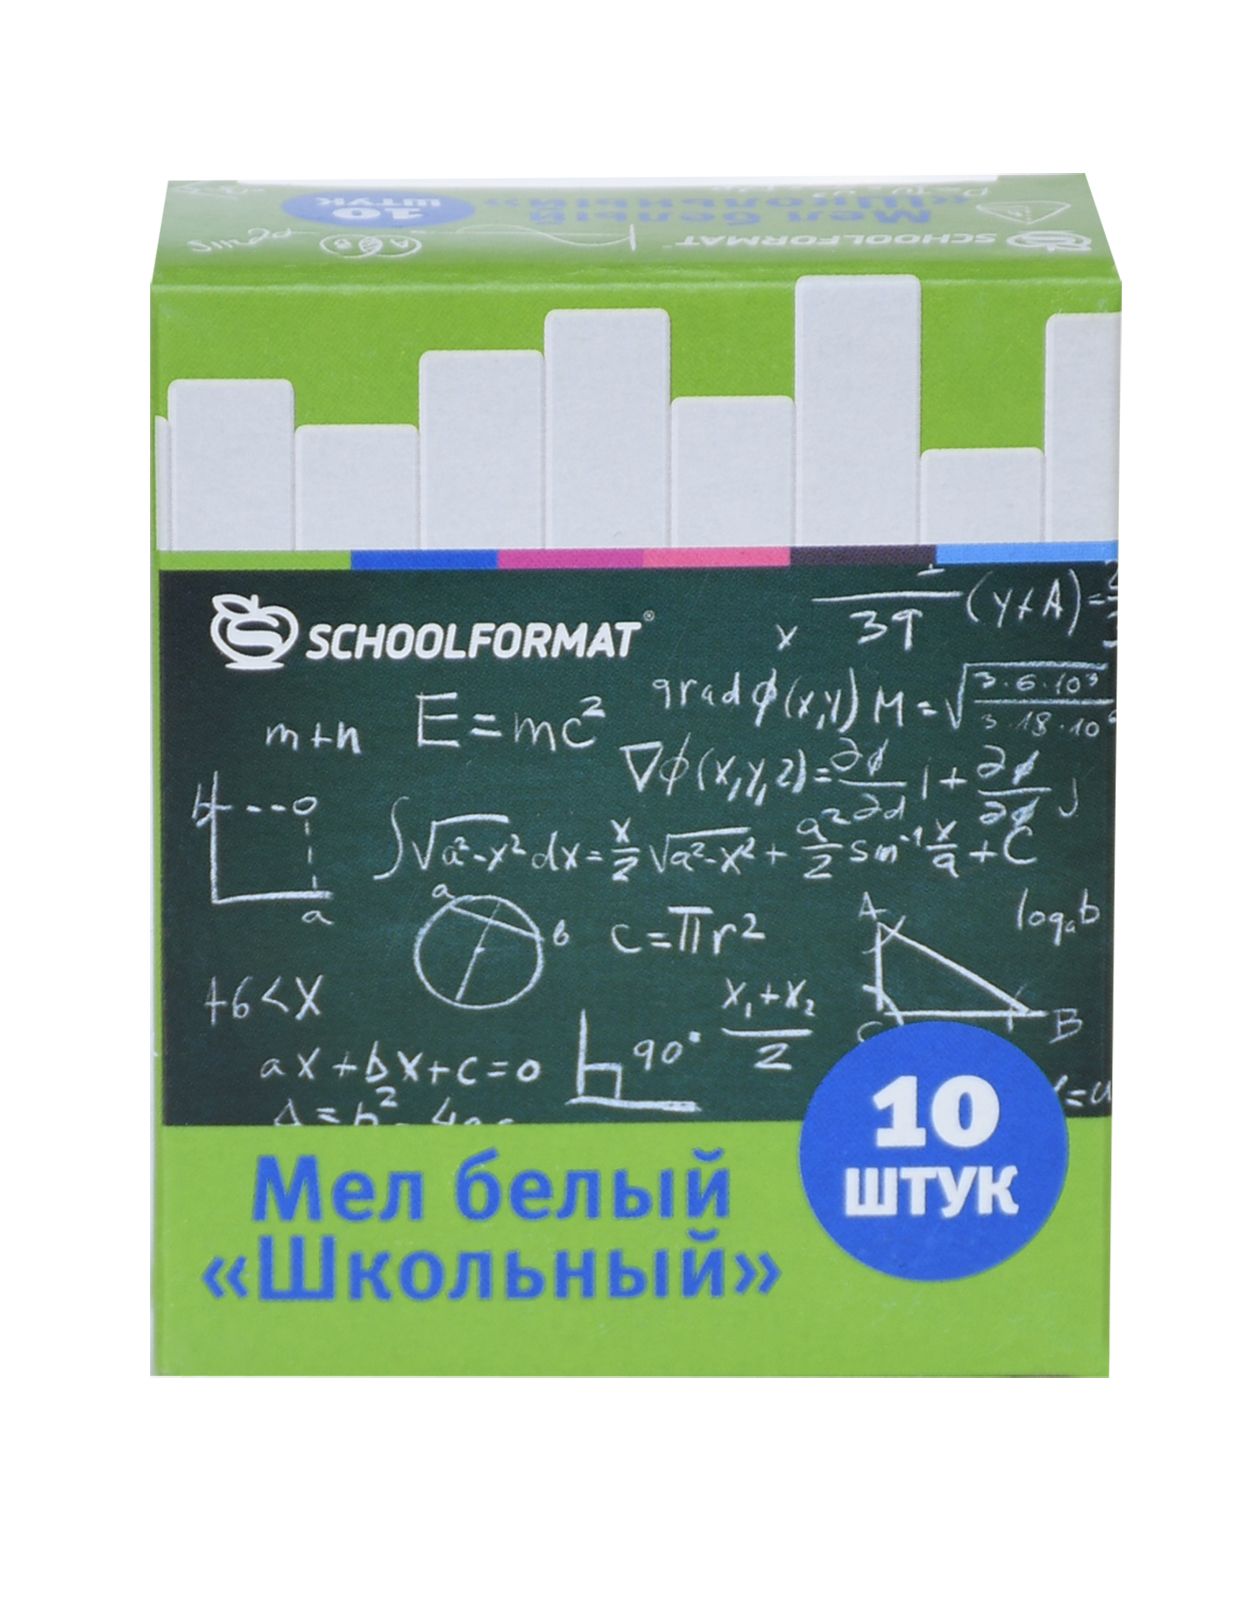 Мелки белые школьные Schoolformat 10 шт., картонная упаковка оптом